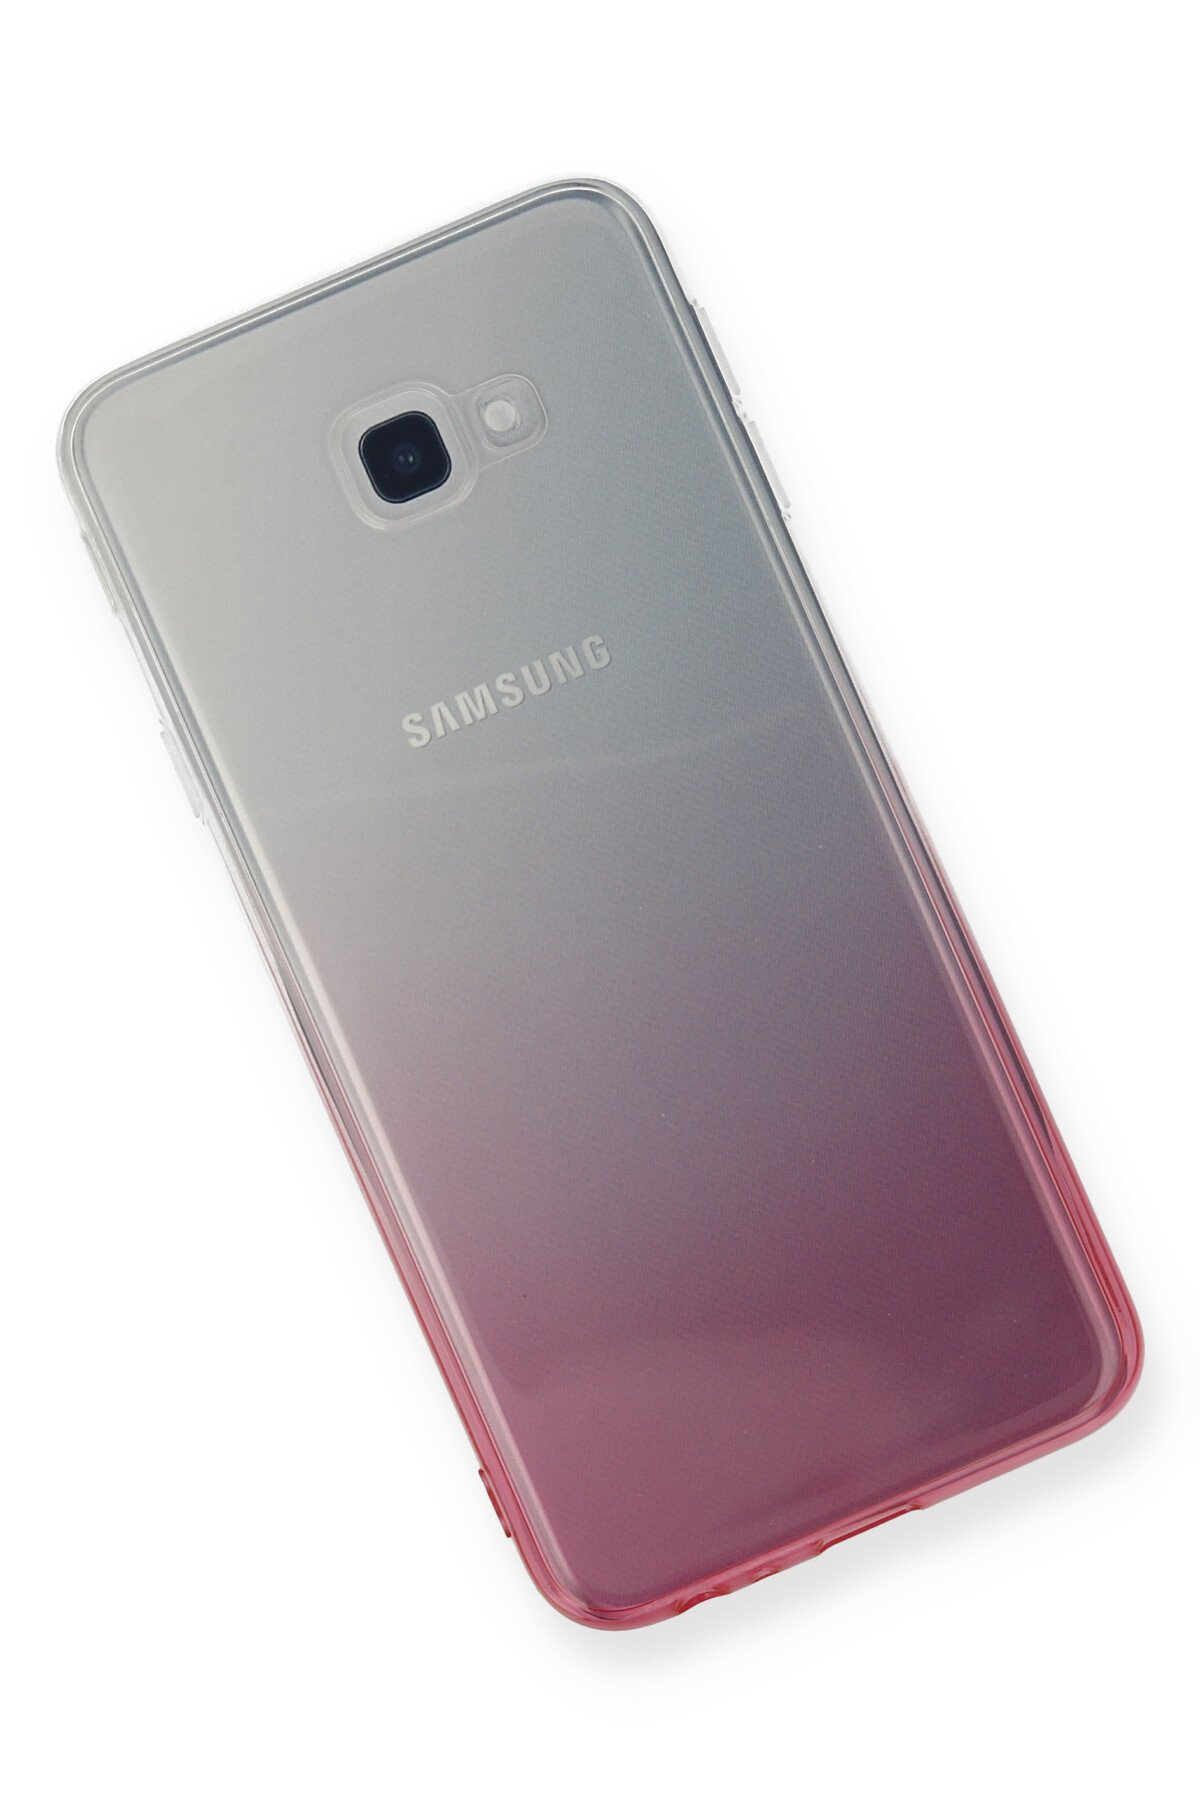 Newface Samsung Galaxy J4 Plus Kılıf YouYou Silikon Kapak - Beyaz